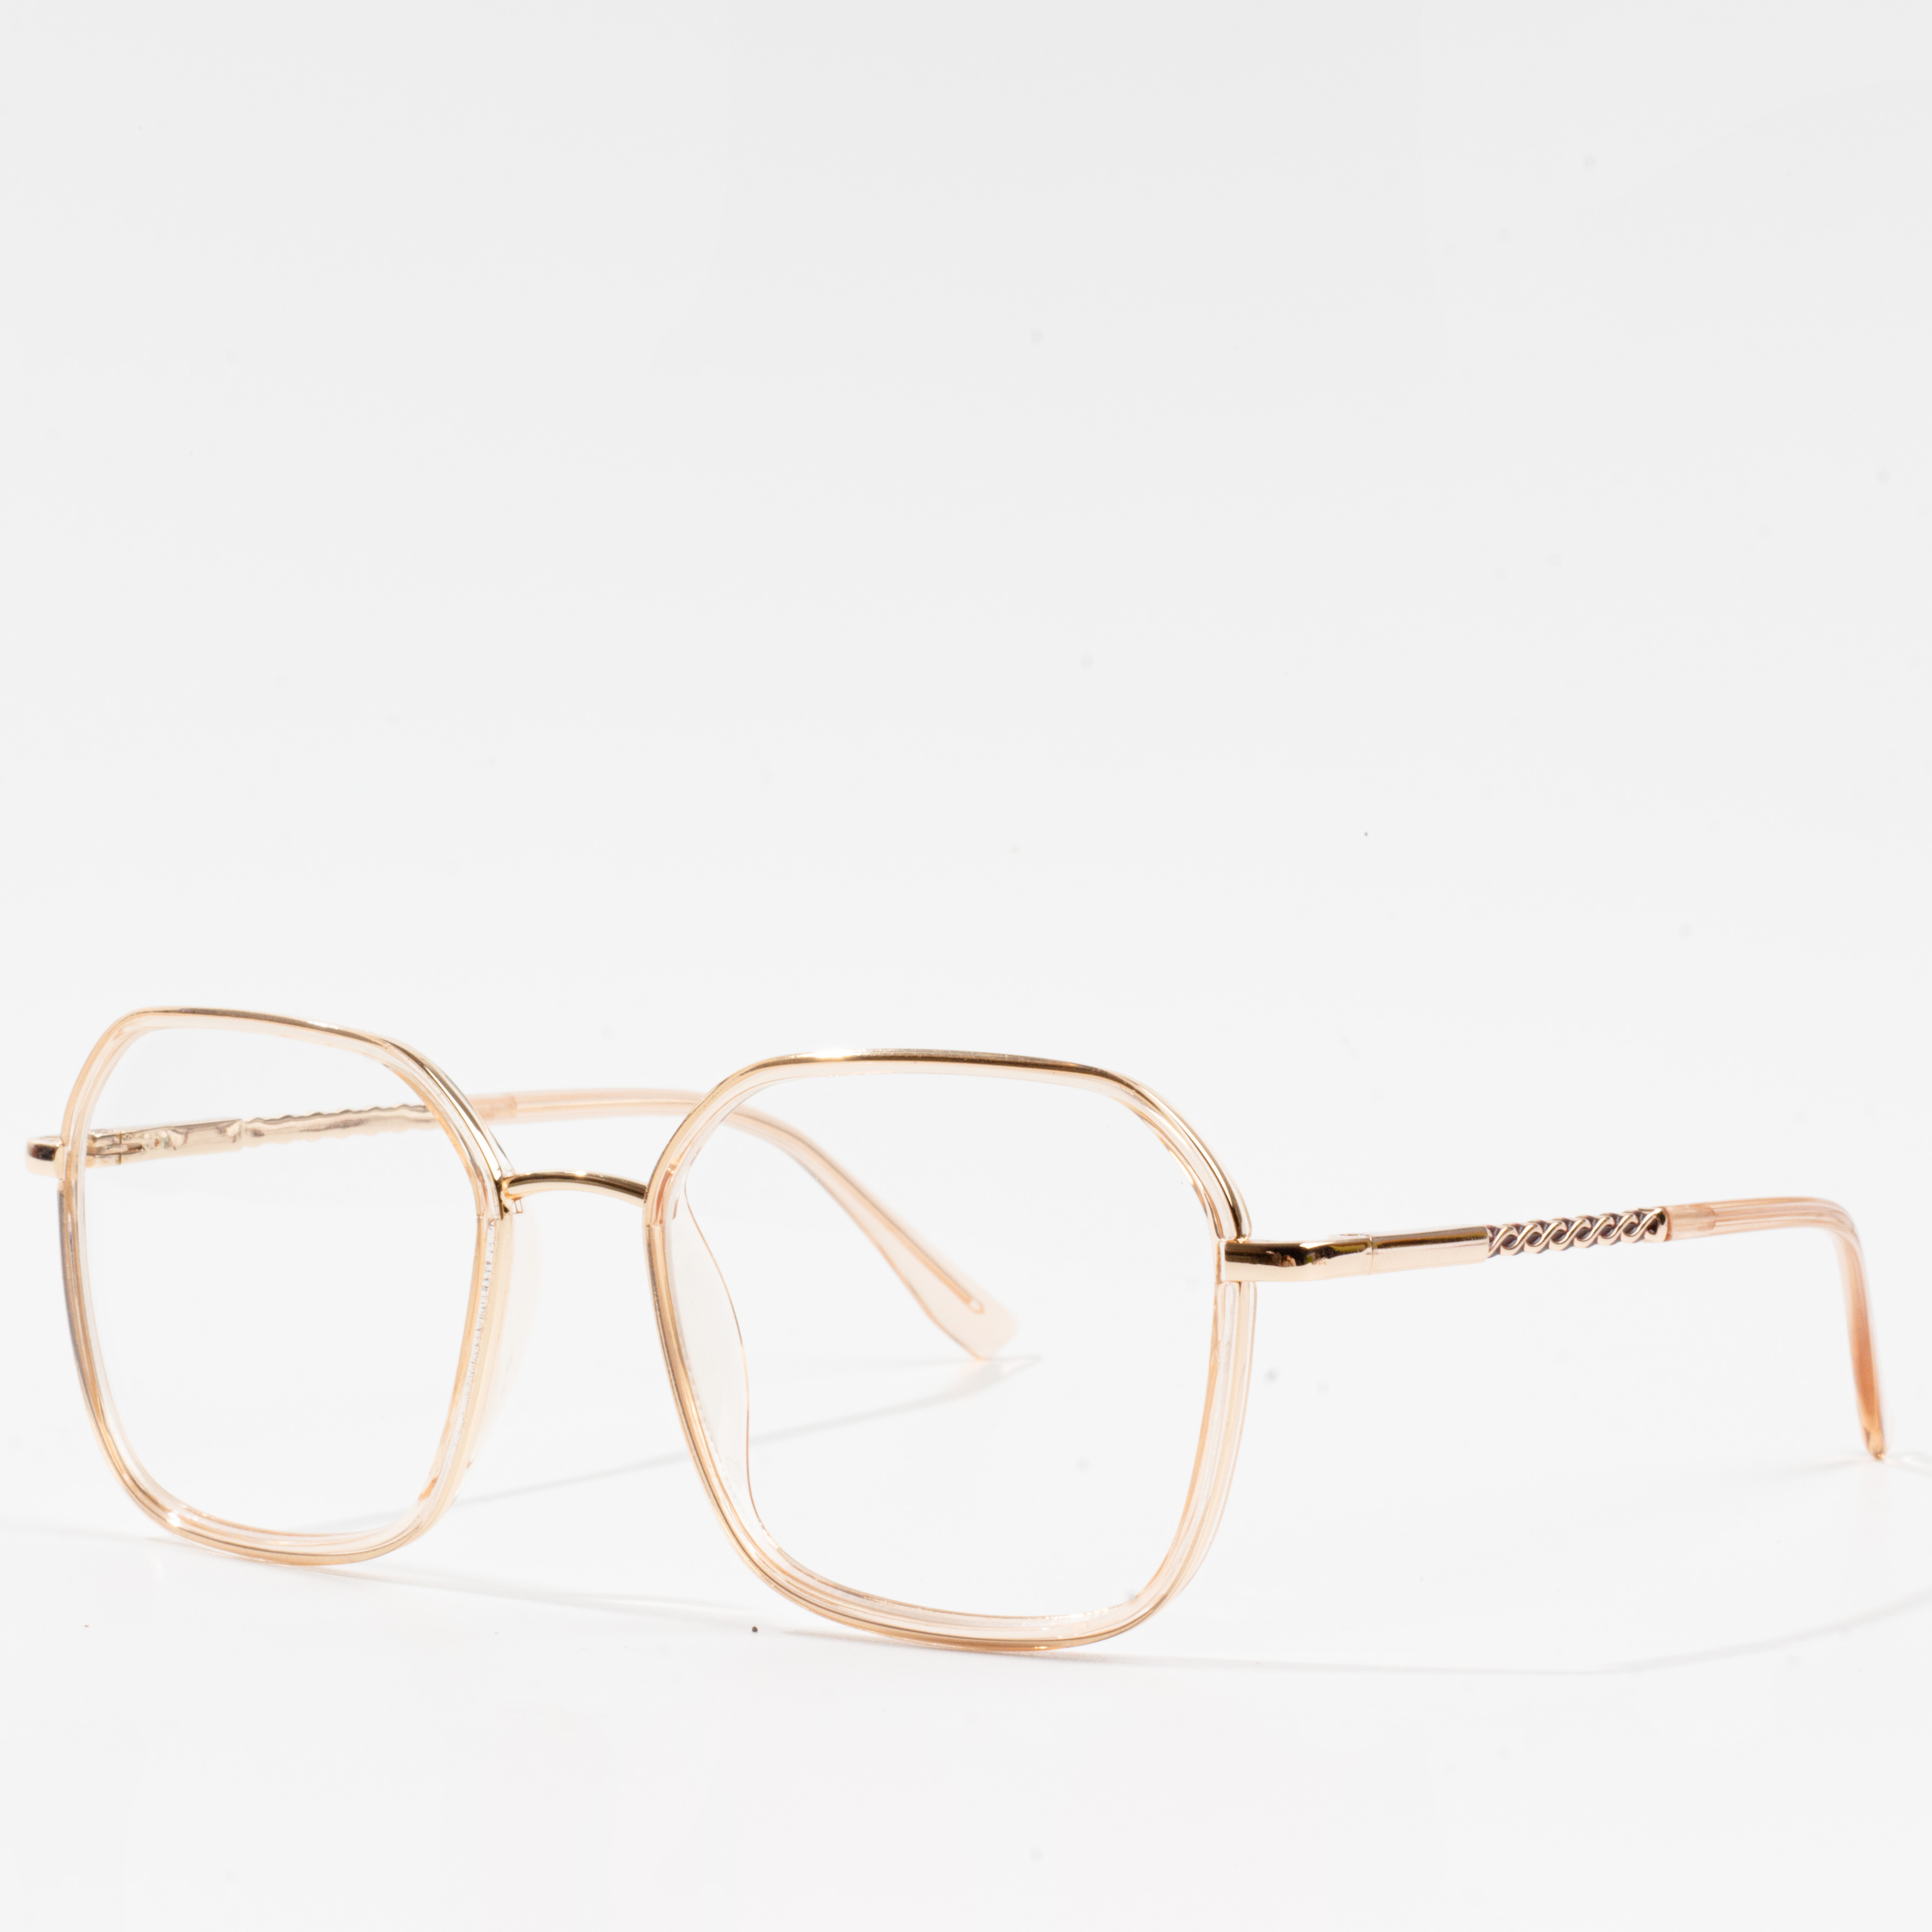 eyeglasses frame for round face